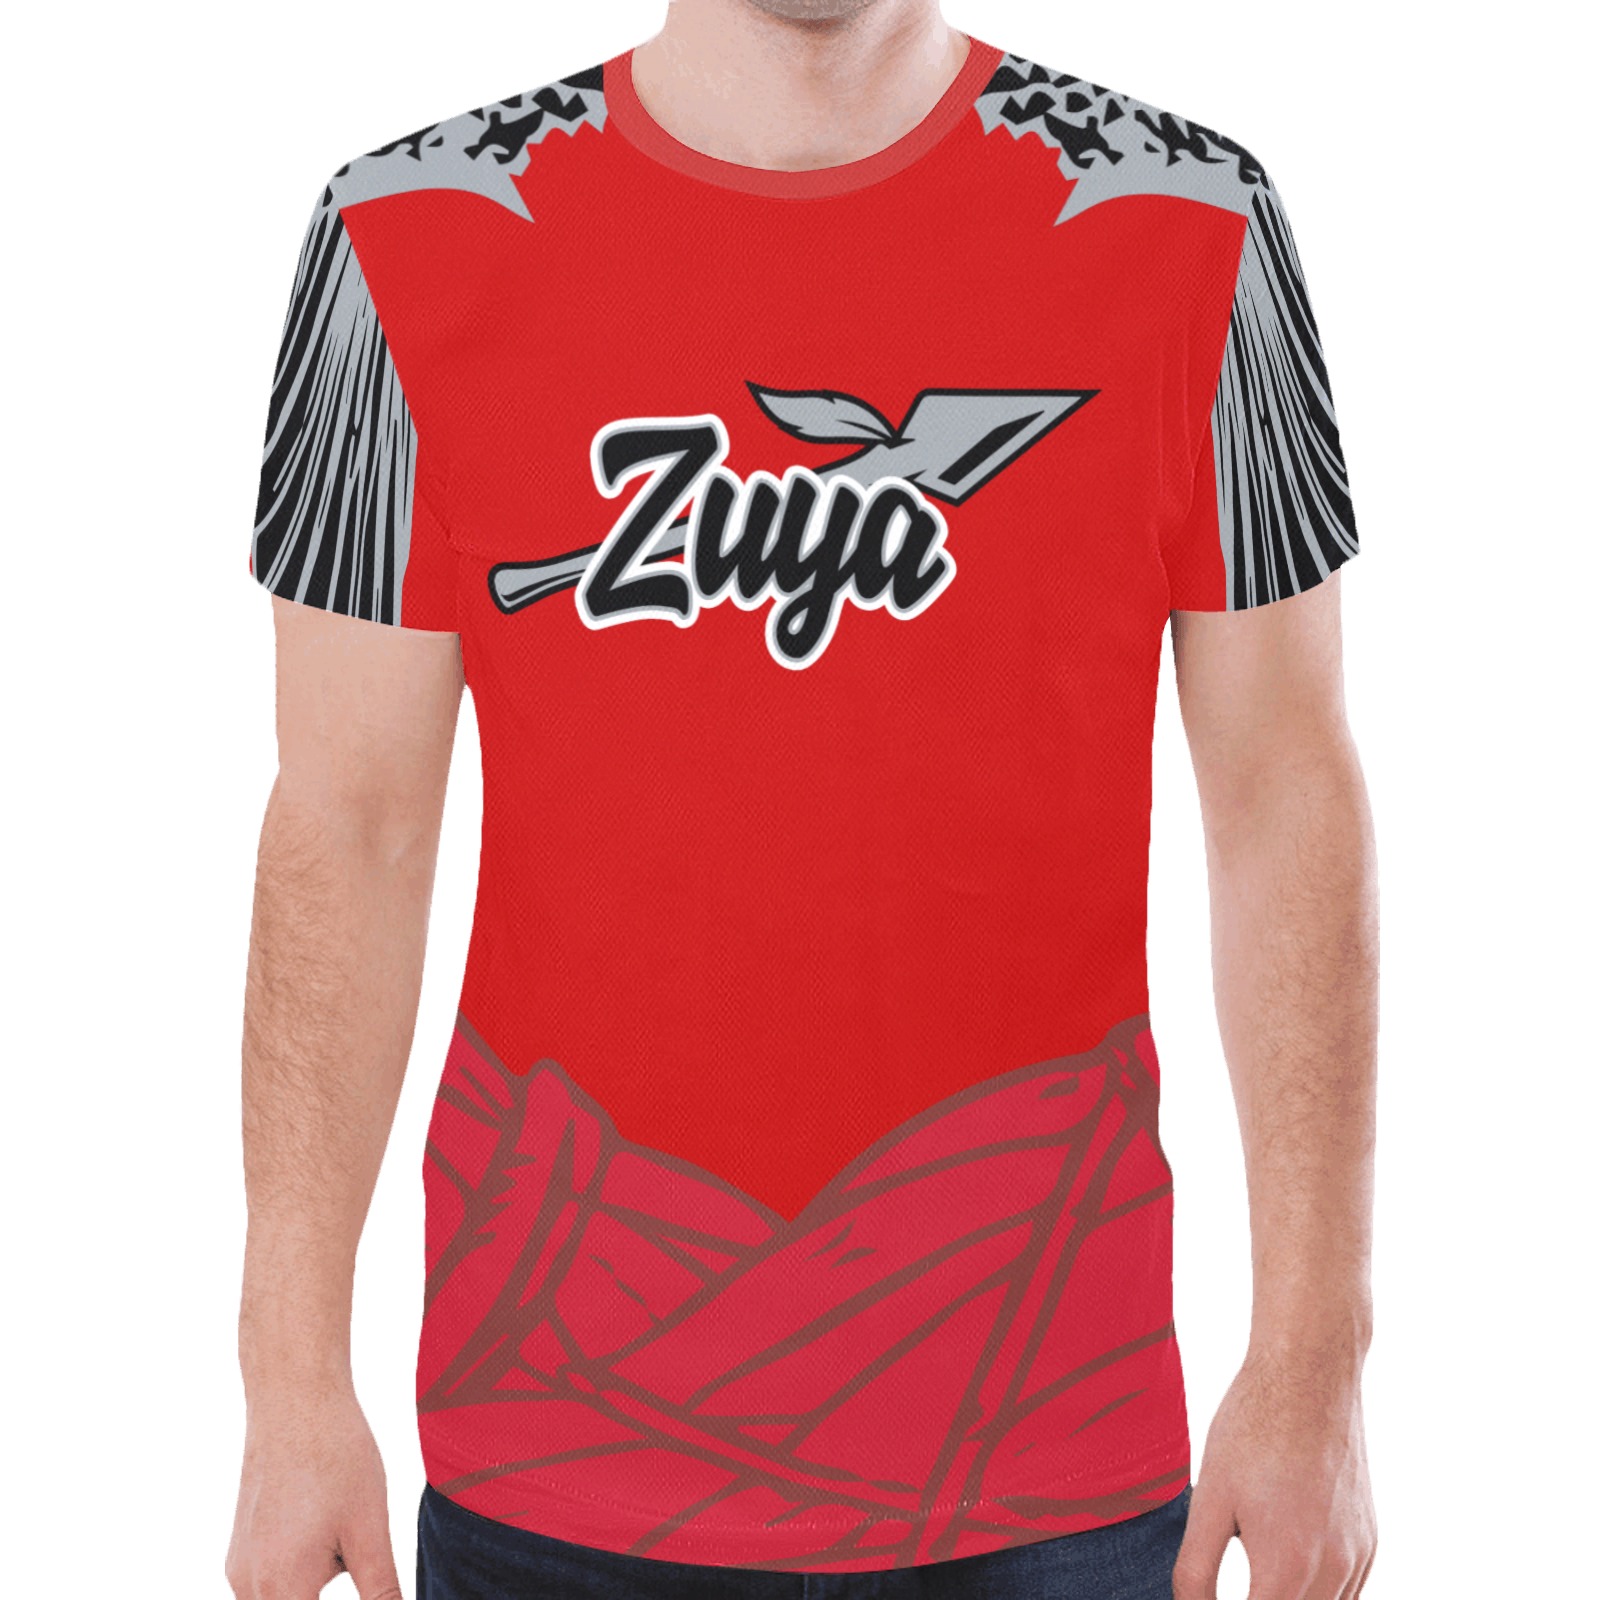 zuya-3-XL New All Over Print T-shirt for Men (Model T45)